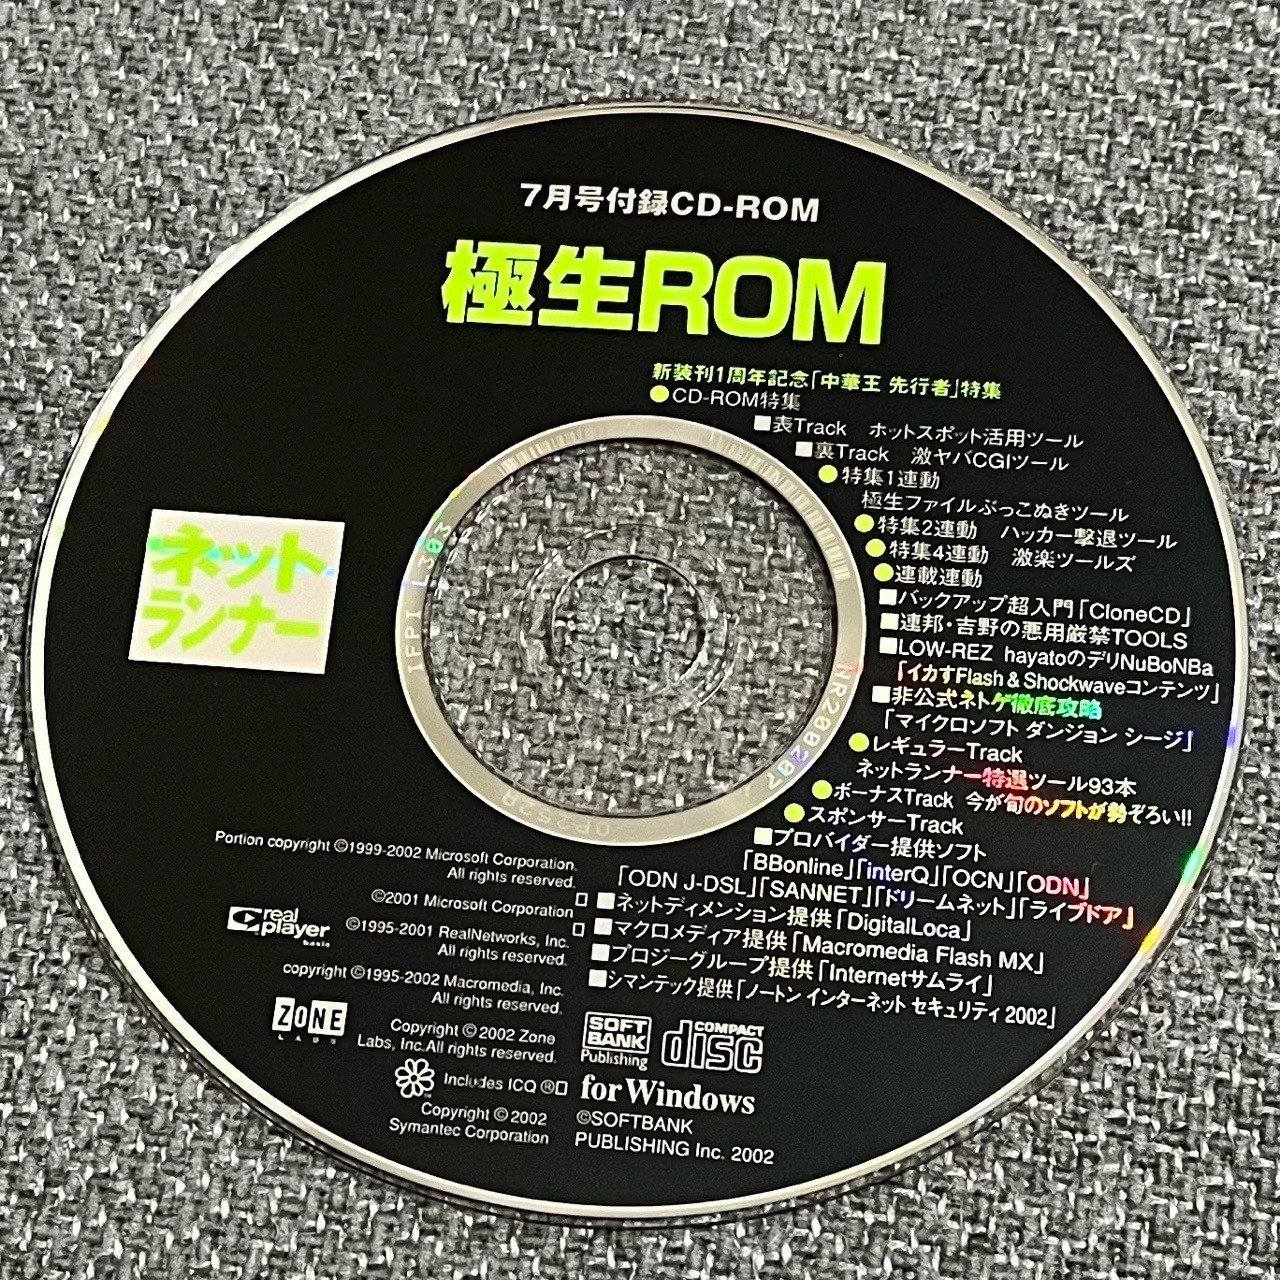 ネットランナー 2002年7月号付録CD-ROM 極生ROM。まだこんなものを持っていたとは。。。中国の先行者「中華キャノン」のプラモデルが入ってたやつだ( ´∀｀)